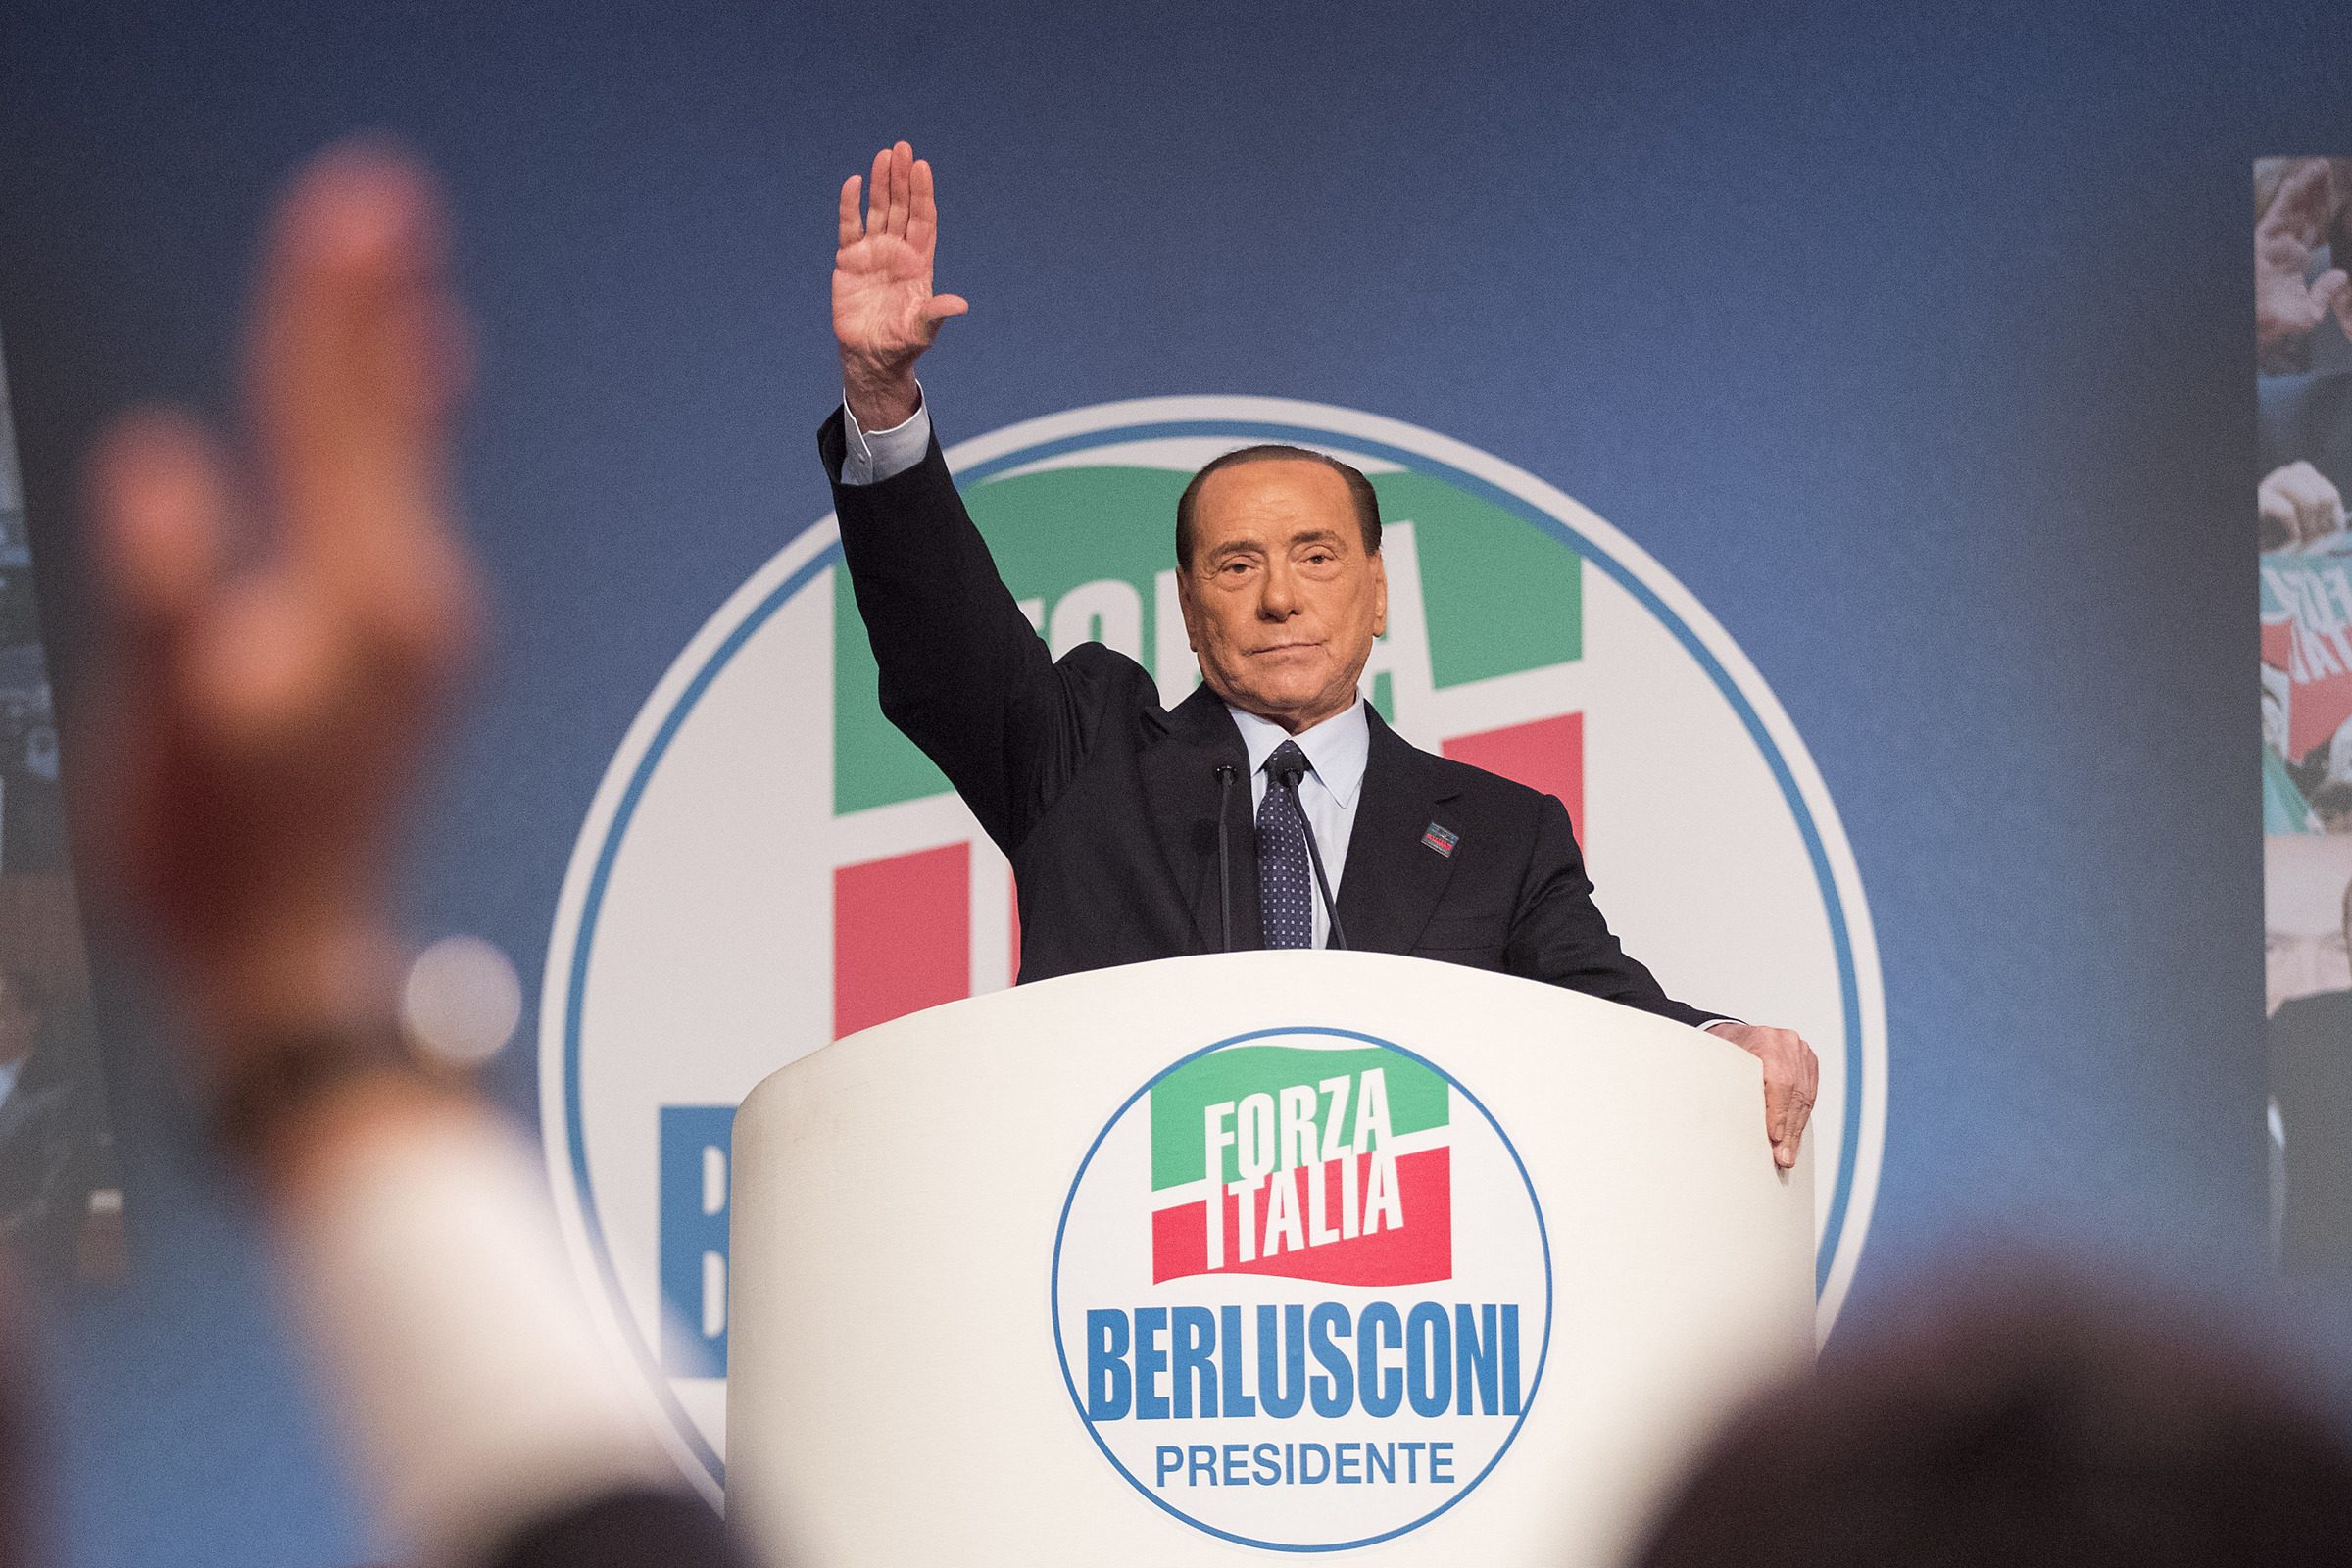 La destra favorisce gli evasori e Berlusconi vuole finanziare la flat tax con la lotta all'evasione